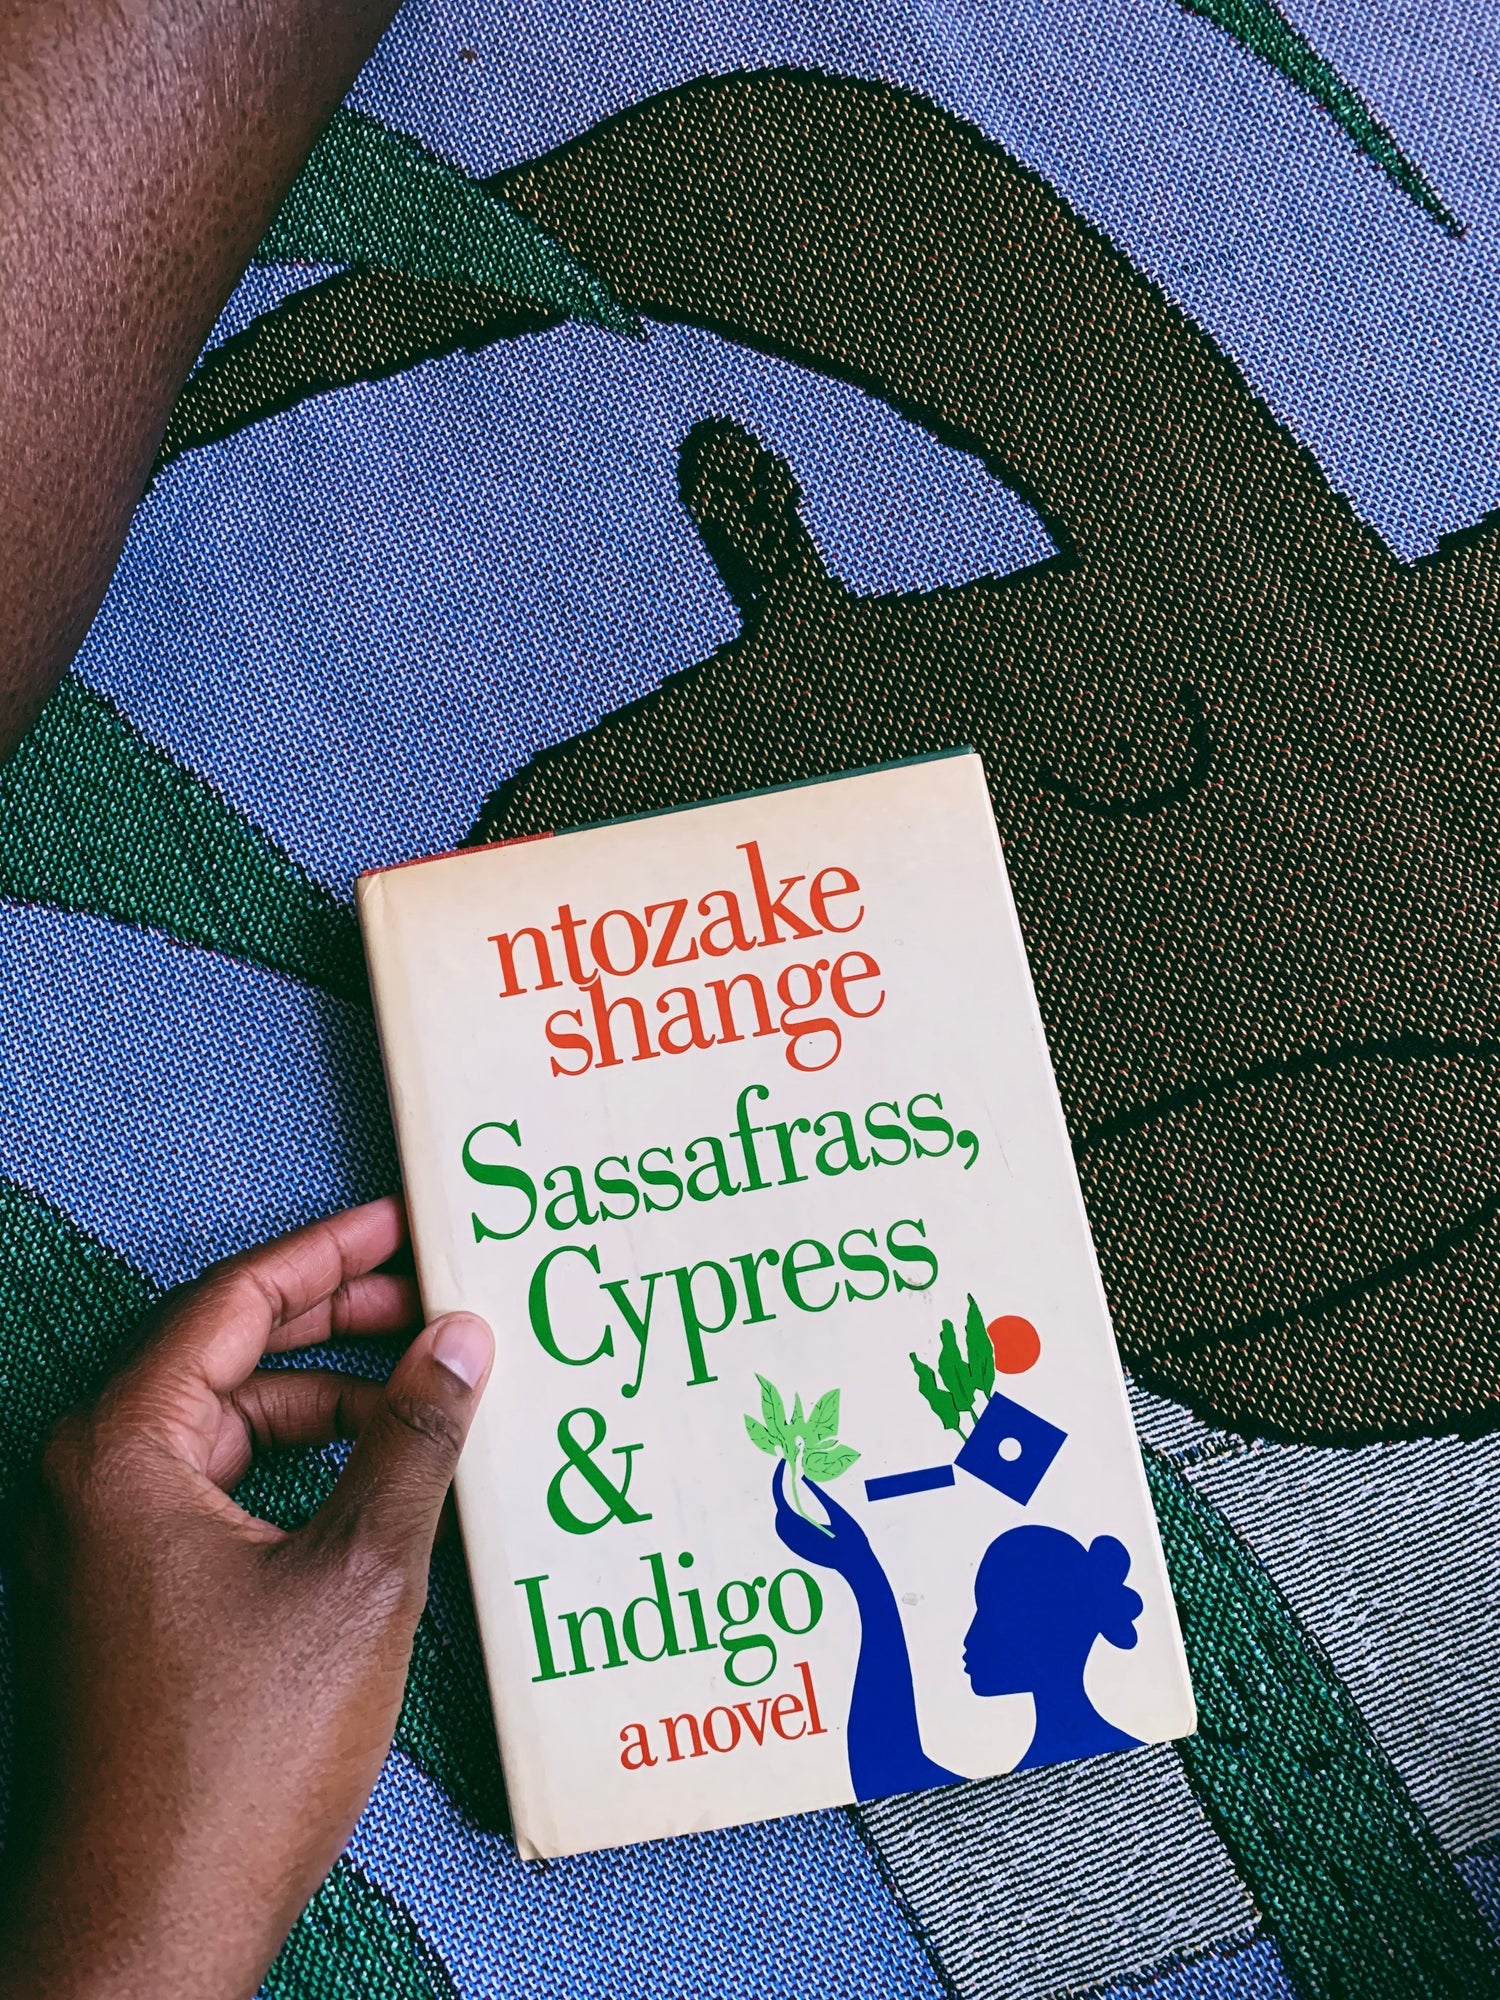 RESERVED: Vintage SIGNED Hardcover “Sassafrass, Cypress &amp; Indigo” by Ntozake Shange (1982)